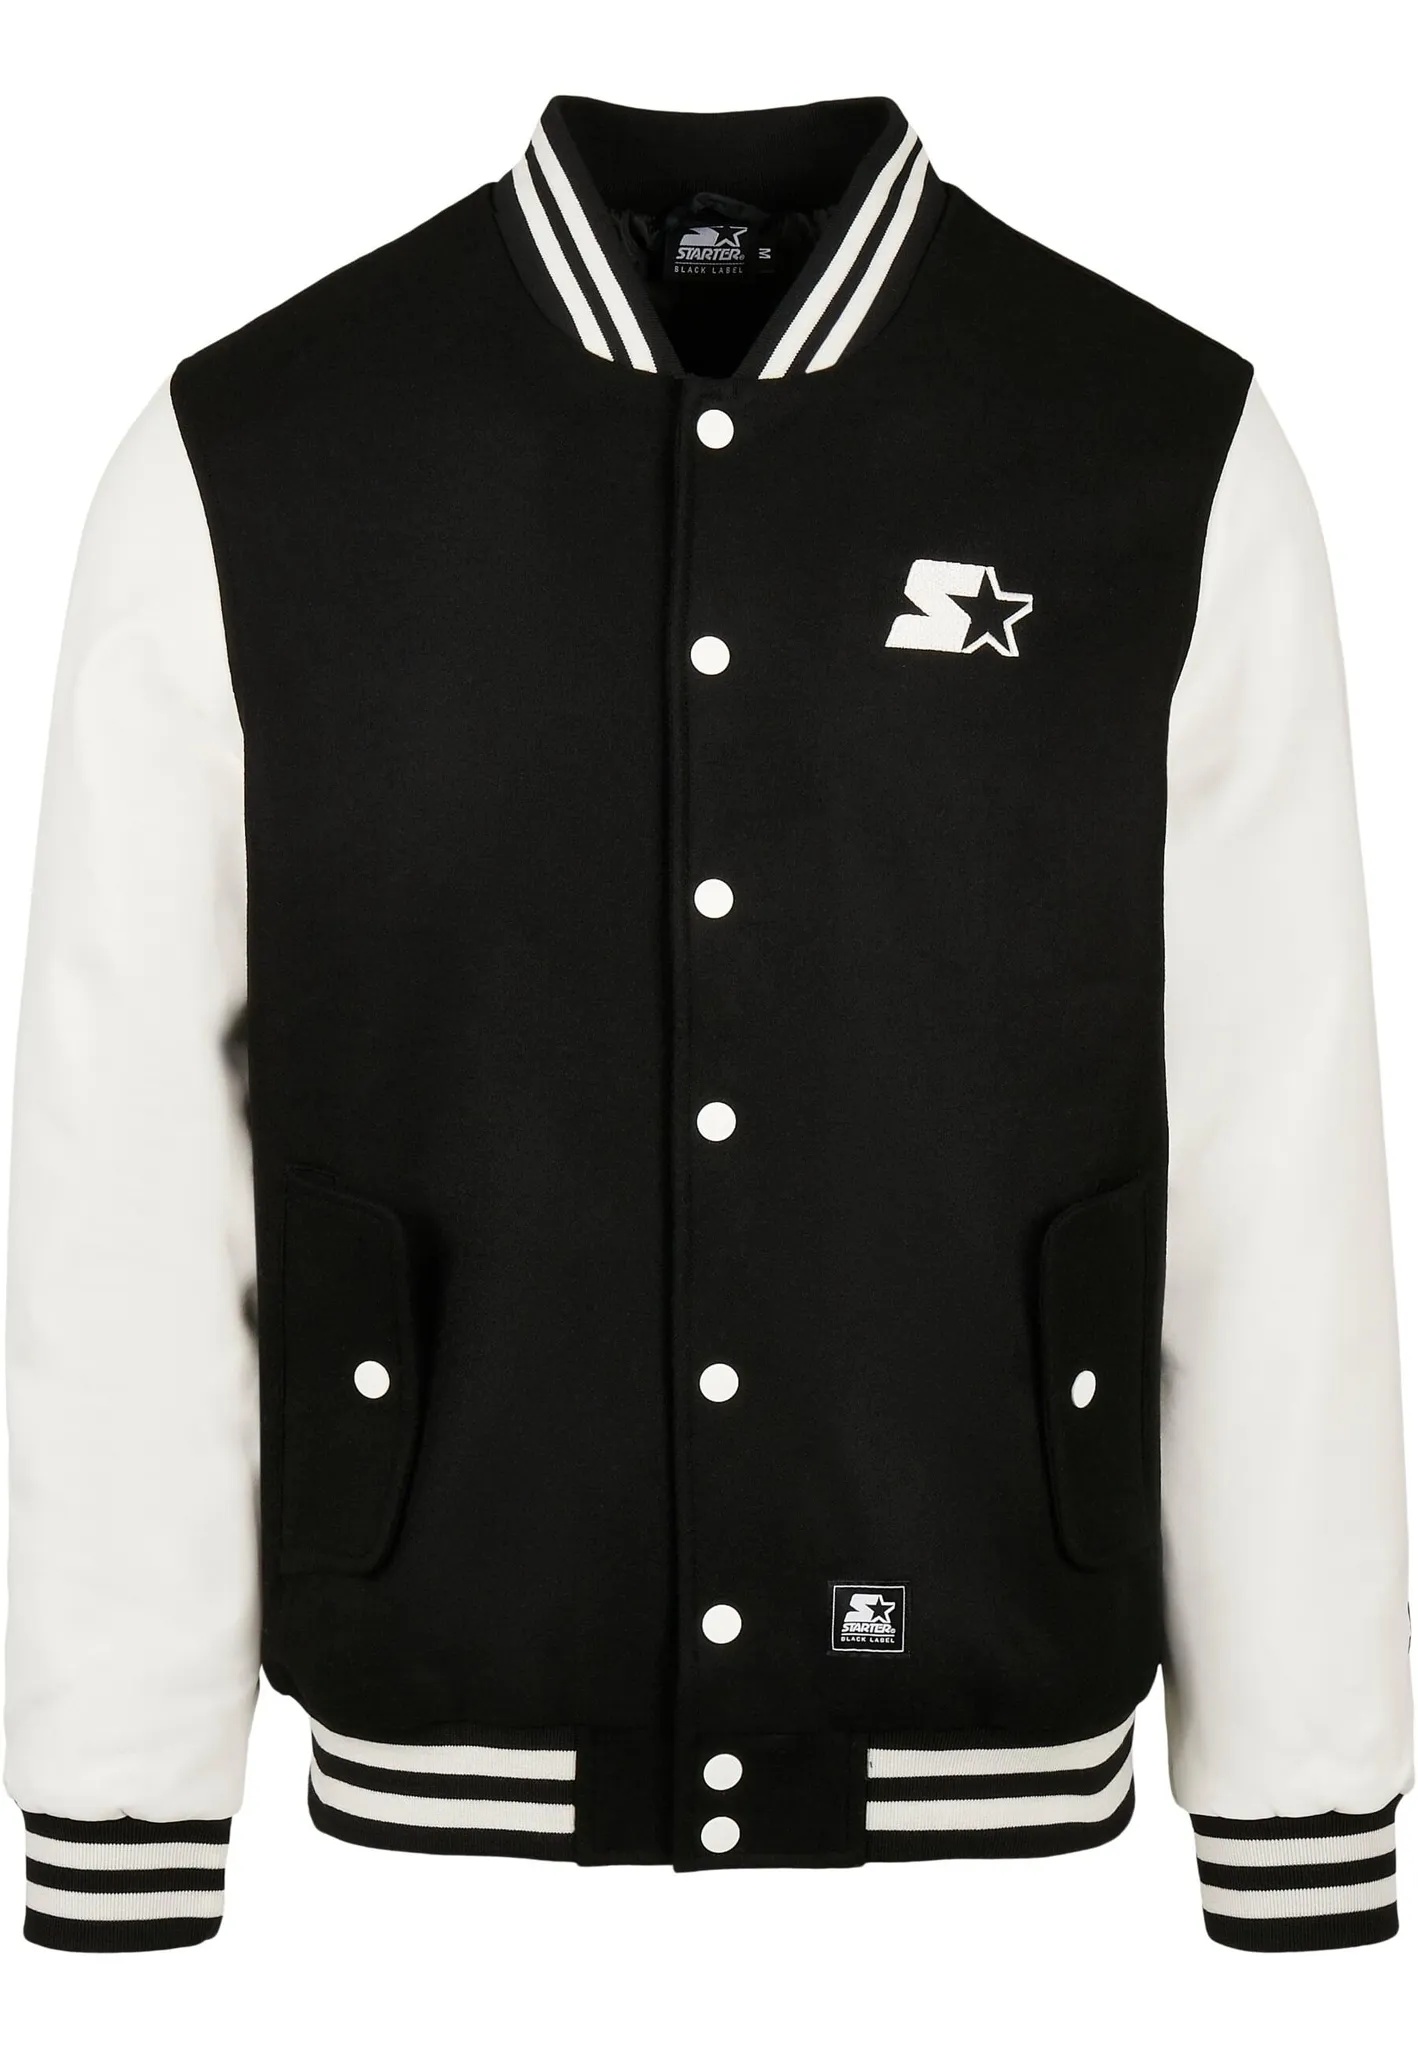 Collegejacke STARTER BLACK LABEL "Herren Starter College Jacket" Gr. XL, schwarz-weiß (black, white) Herren Jacken Übergangsjacken